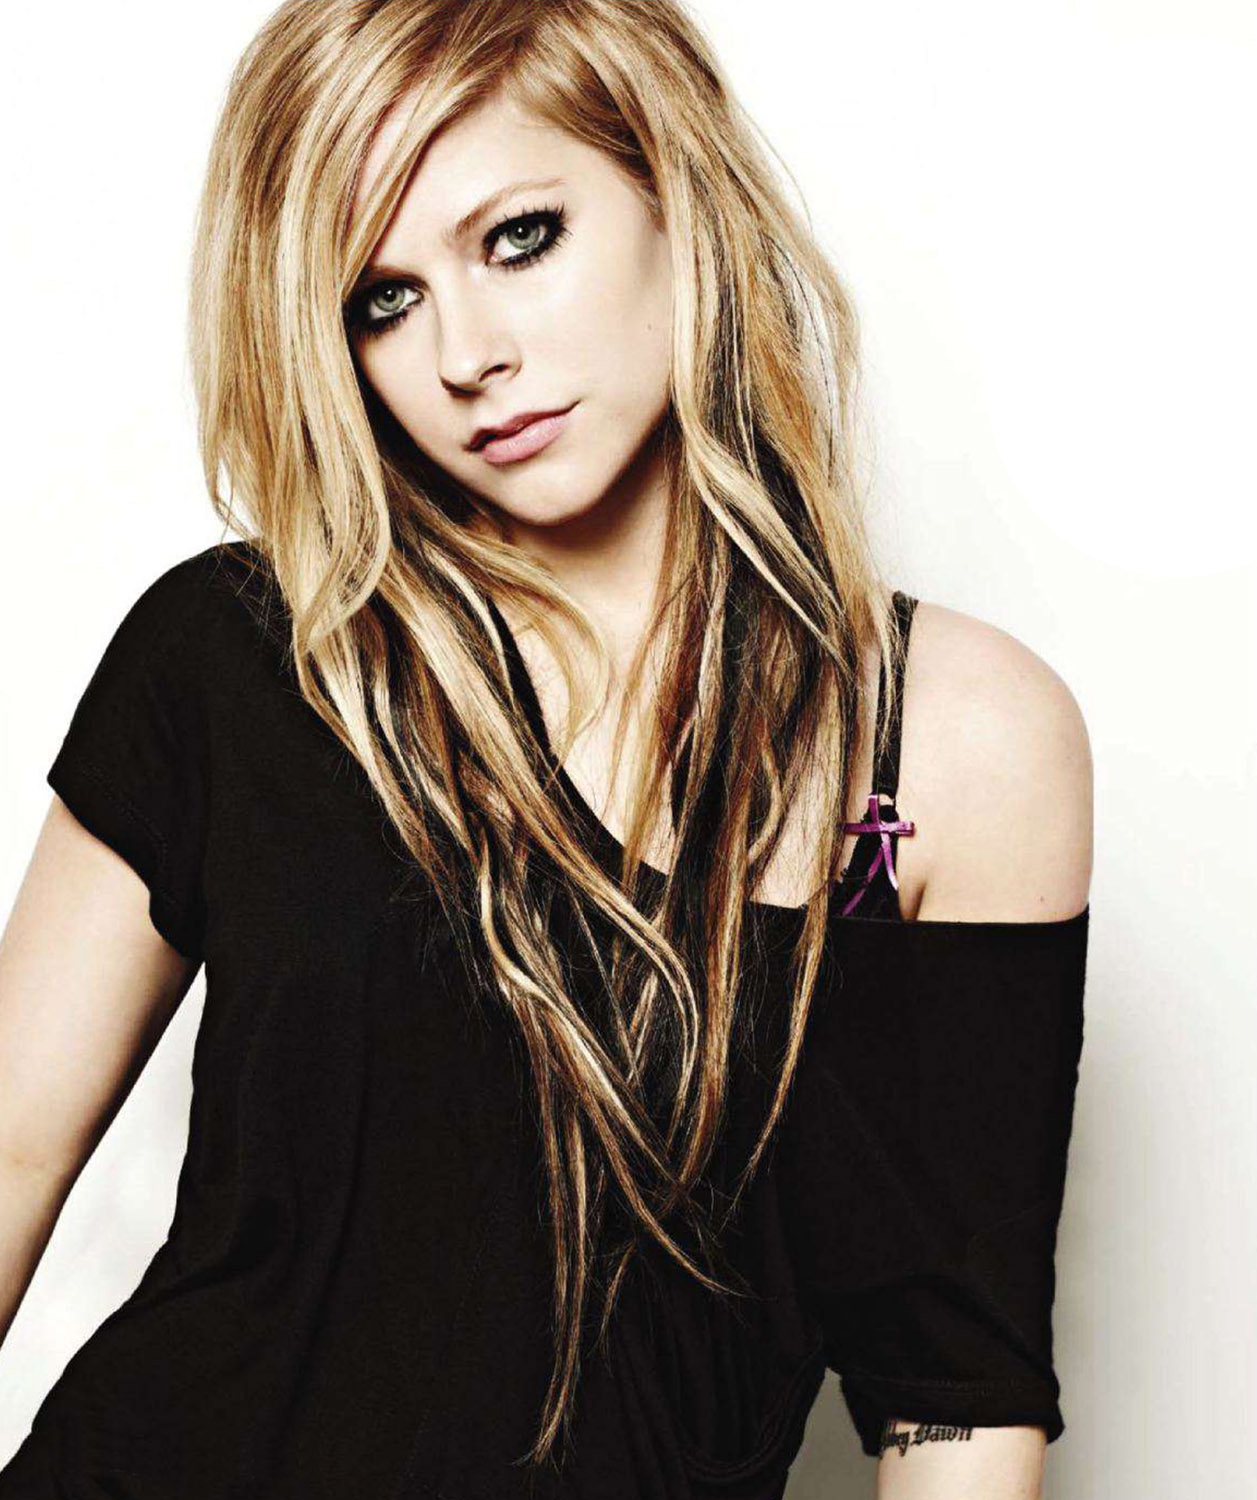 عكسهاي زيبا ازخواننده Avril Lavigne